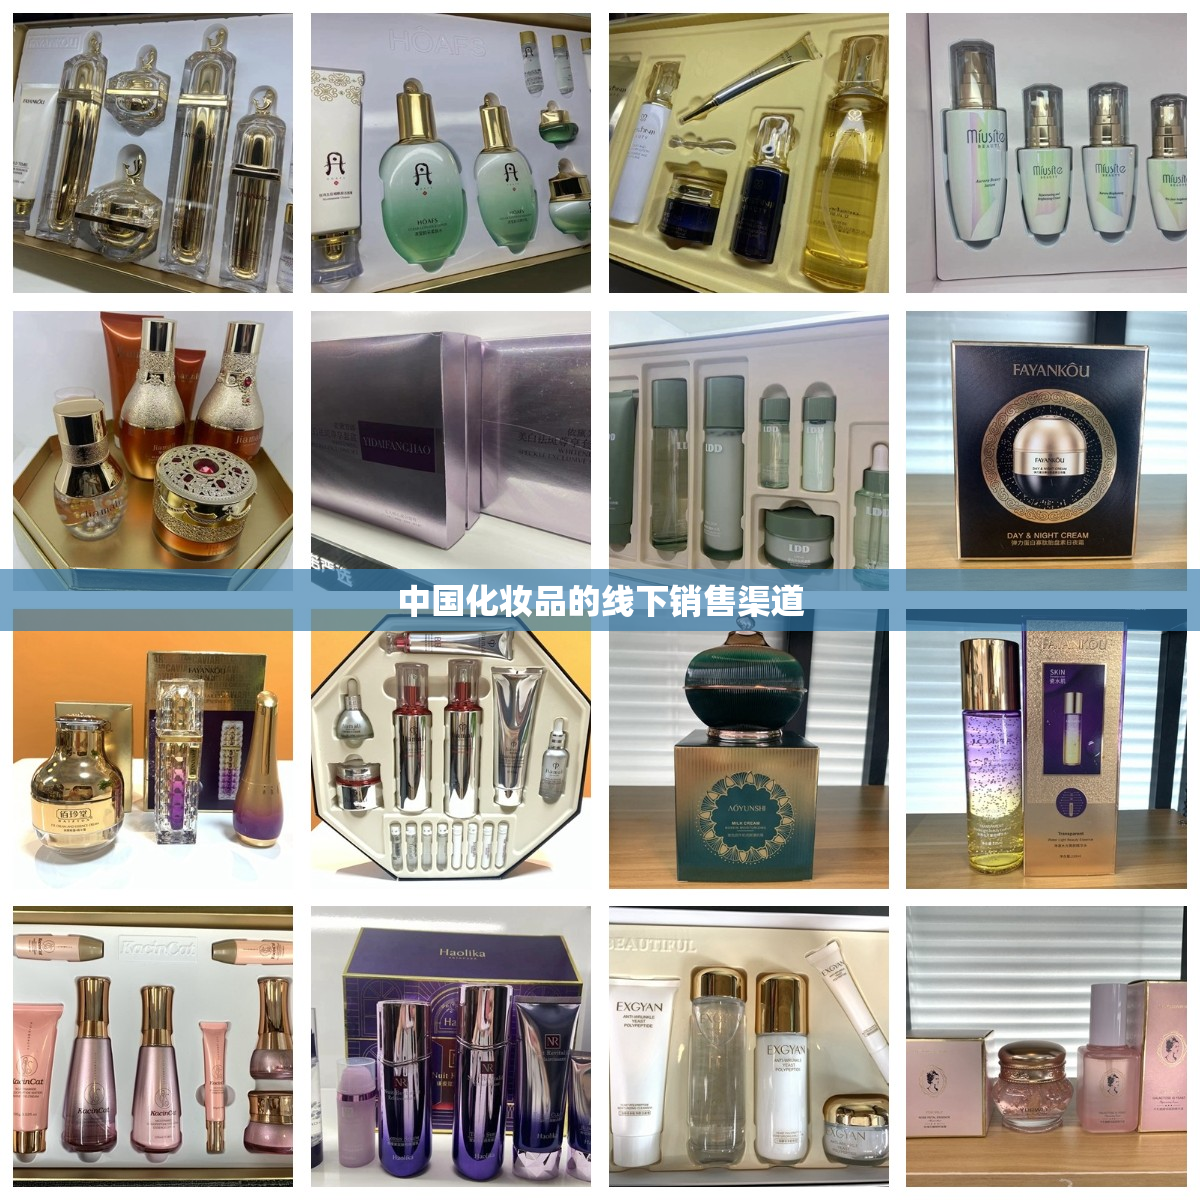 中国化妆品的线下销售渠道